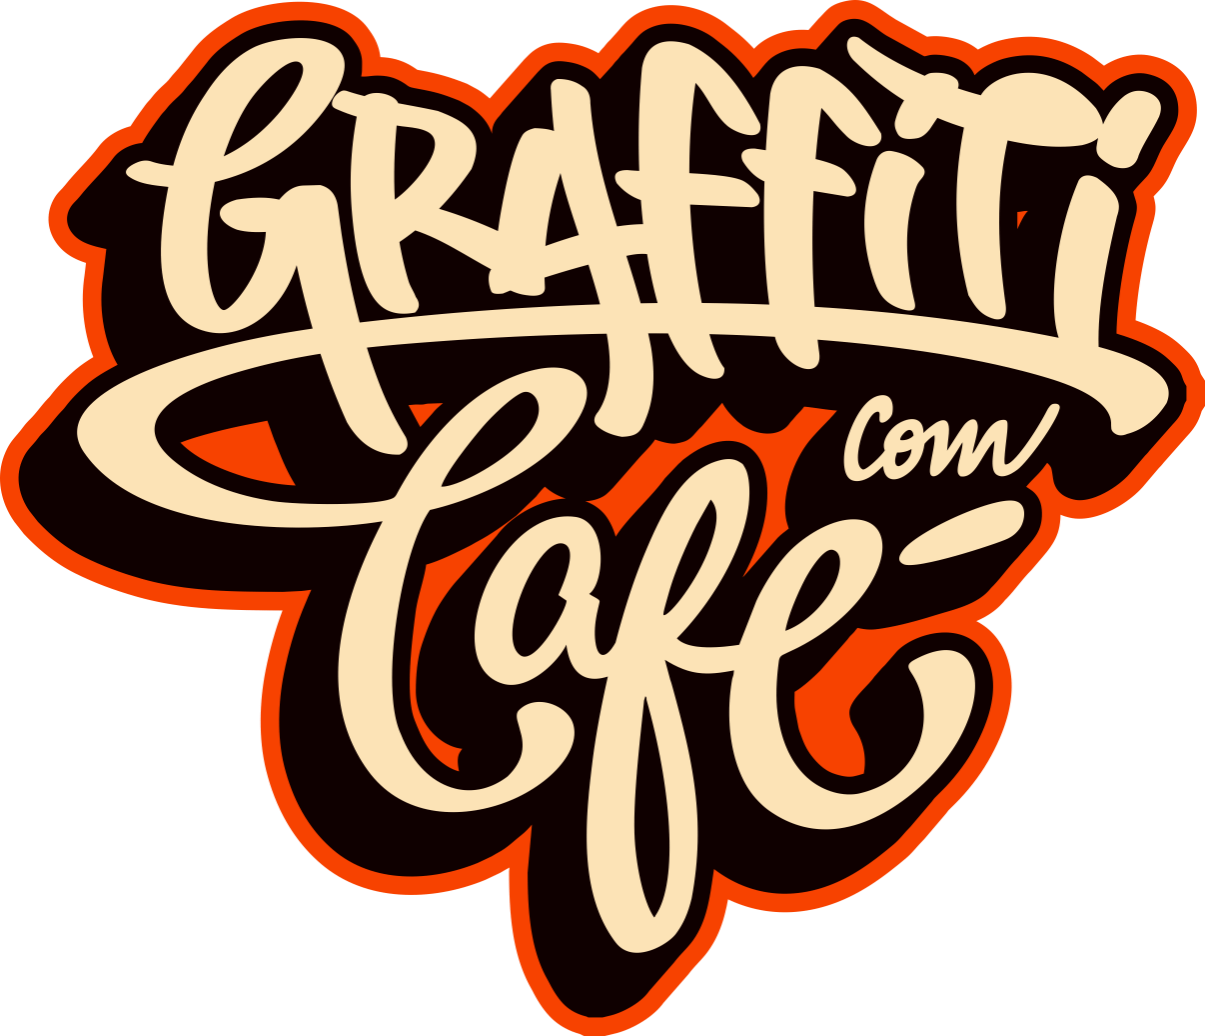 Graffiti com Café